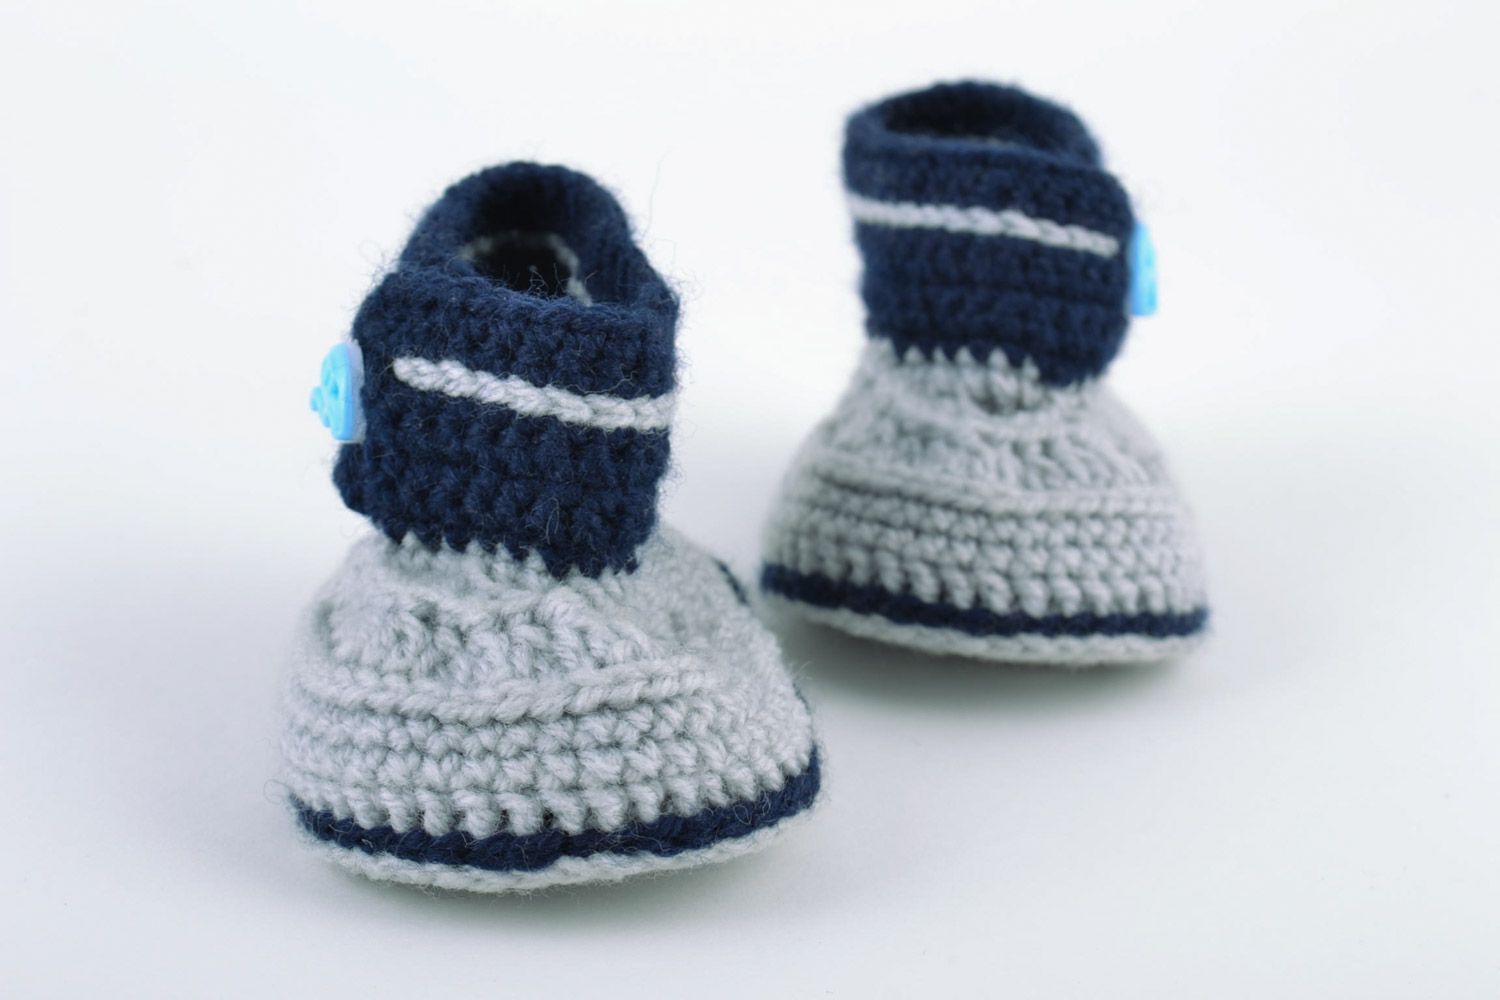 Petucos de bebé con forma de zapatitos artesanales de lana grises azules foto 5